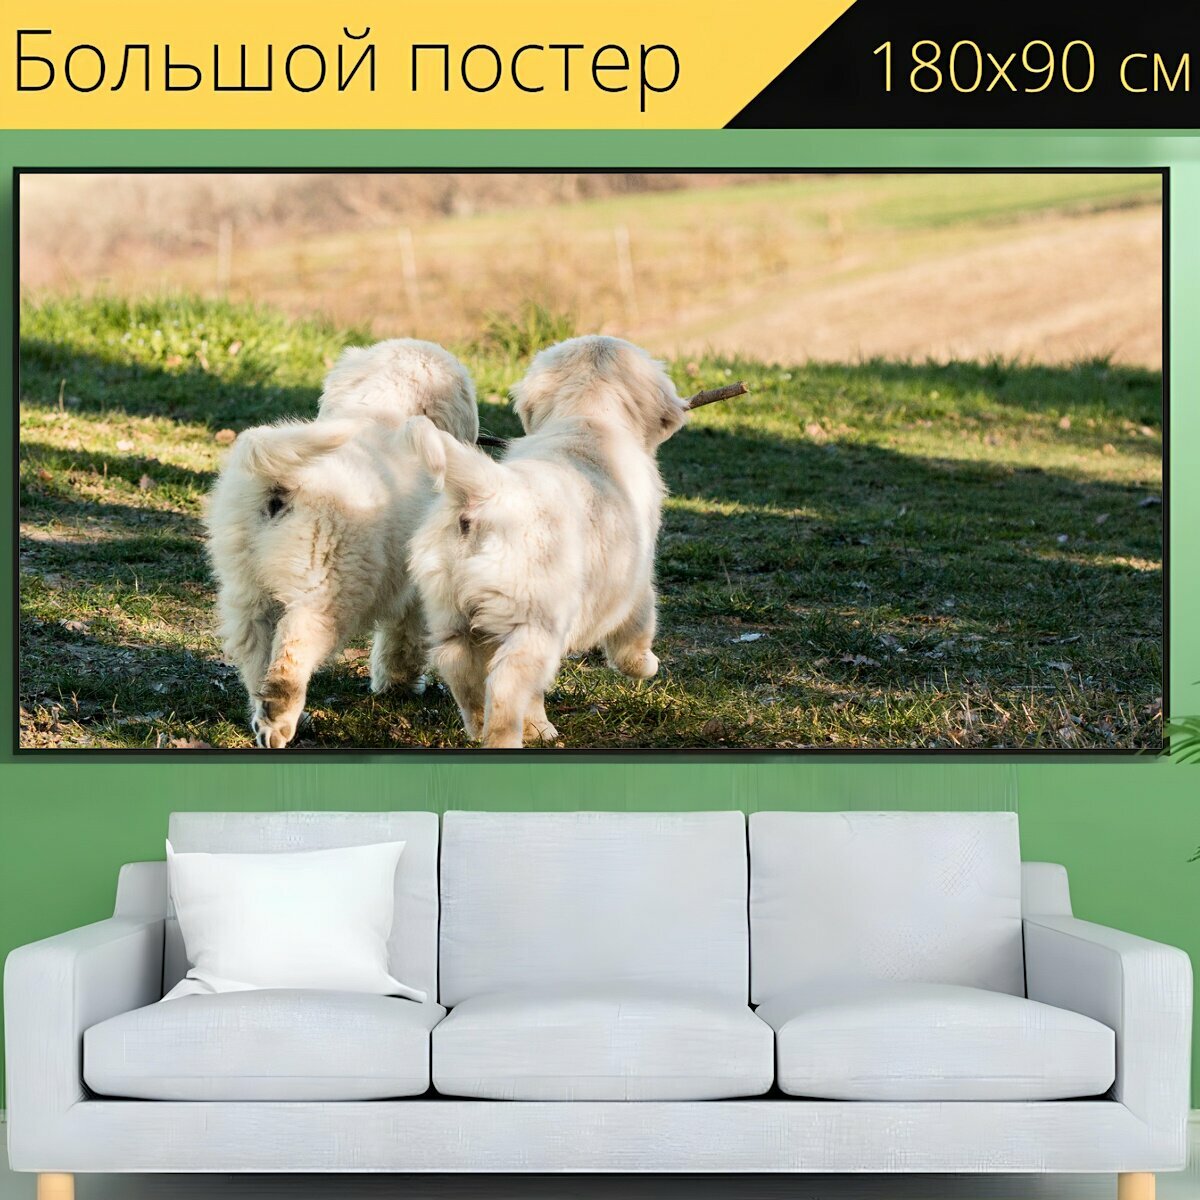 Большой постер "Щенок, собака, домашний питомец" 180 x 90 см. для интерьера